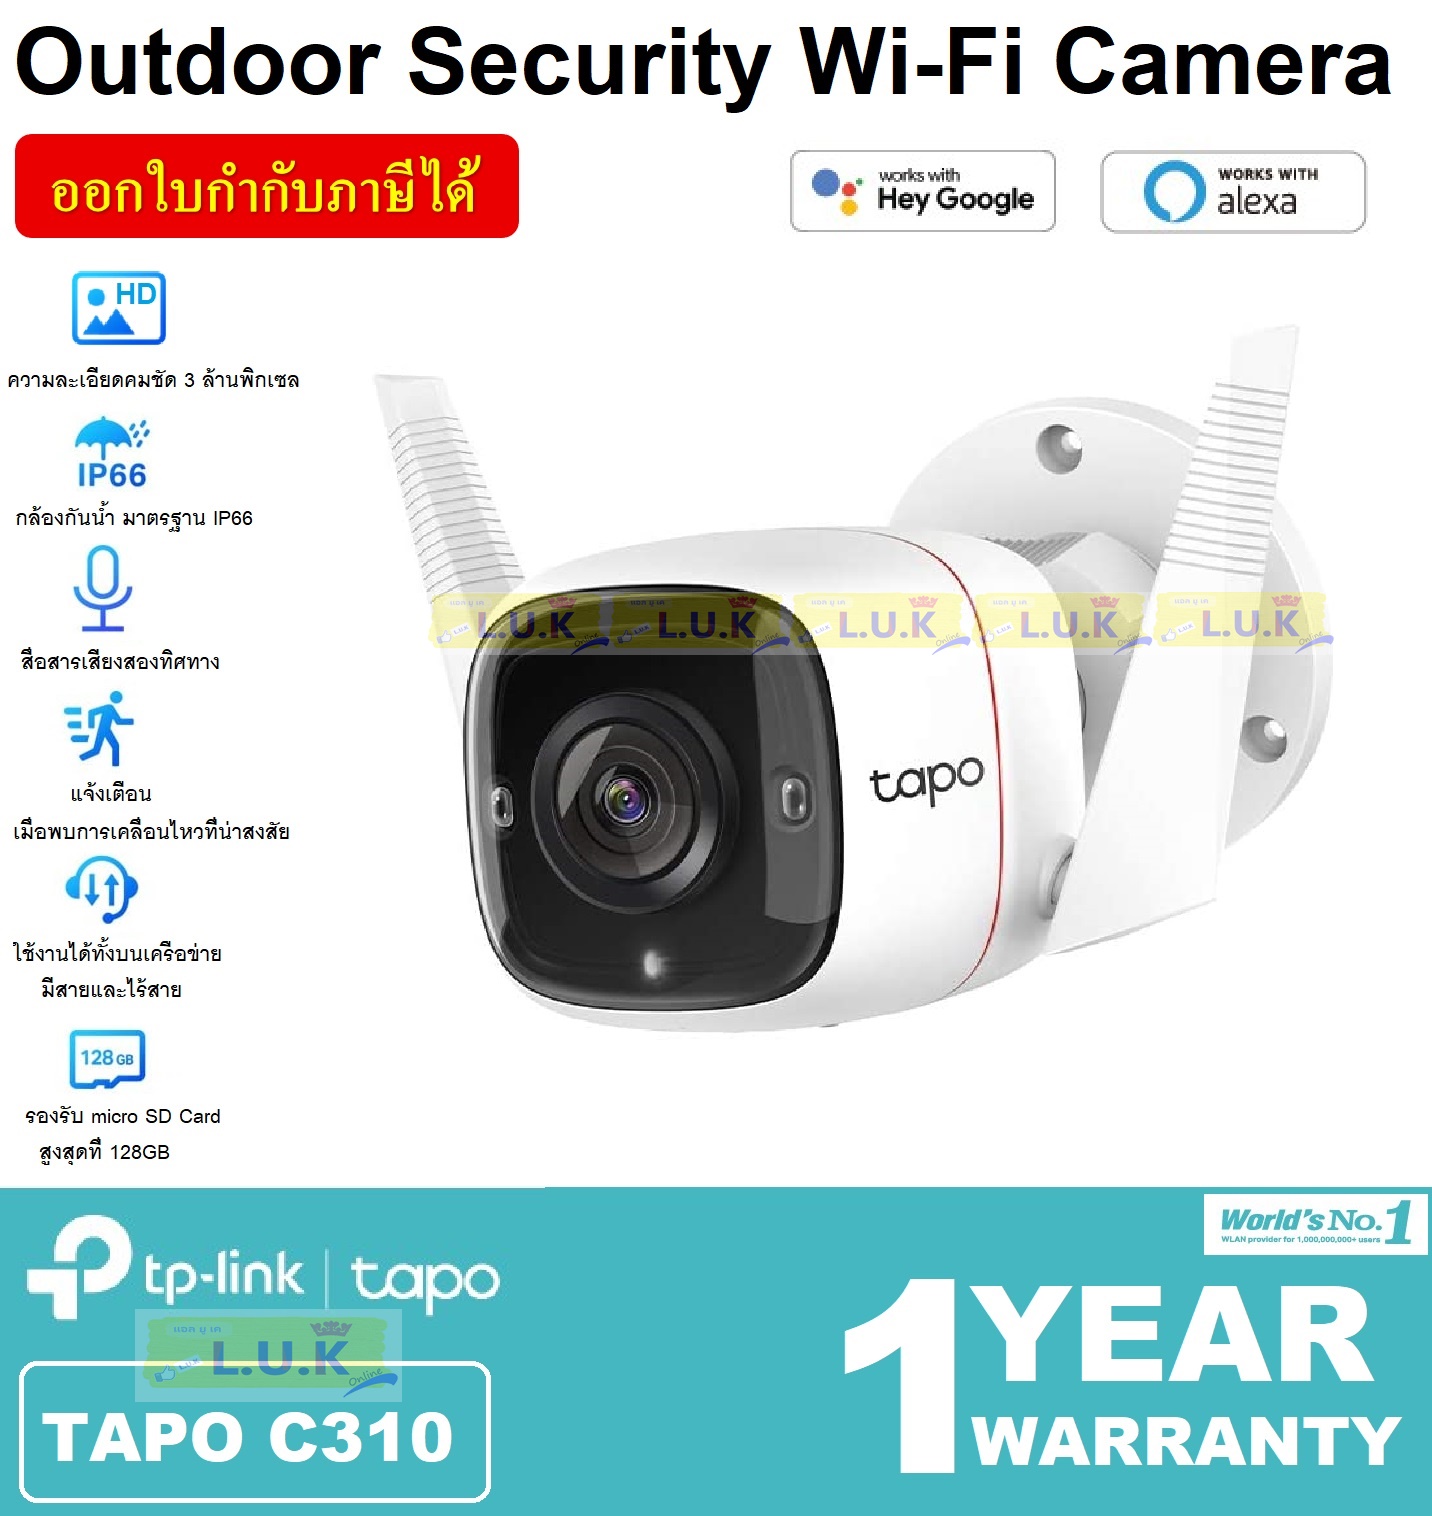 CCTV (กล้องวงจรปิด) TP-LINK รุ่น TAPO C310 OUTDOOR SECURITY Wi-Fi CAMERA กันน้ำ IP66 | HD 3MP (2304 × 1296) | เสียงสองทาง | ตรวจจับการเคลื่อนไหว - ของแท้ ประกันศูนย์ 1 ปี